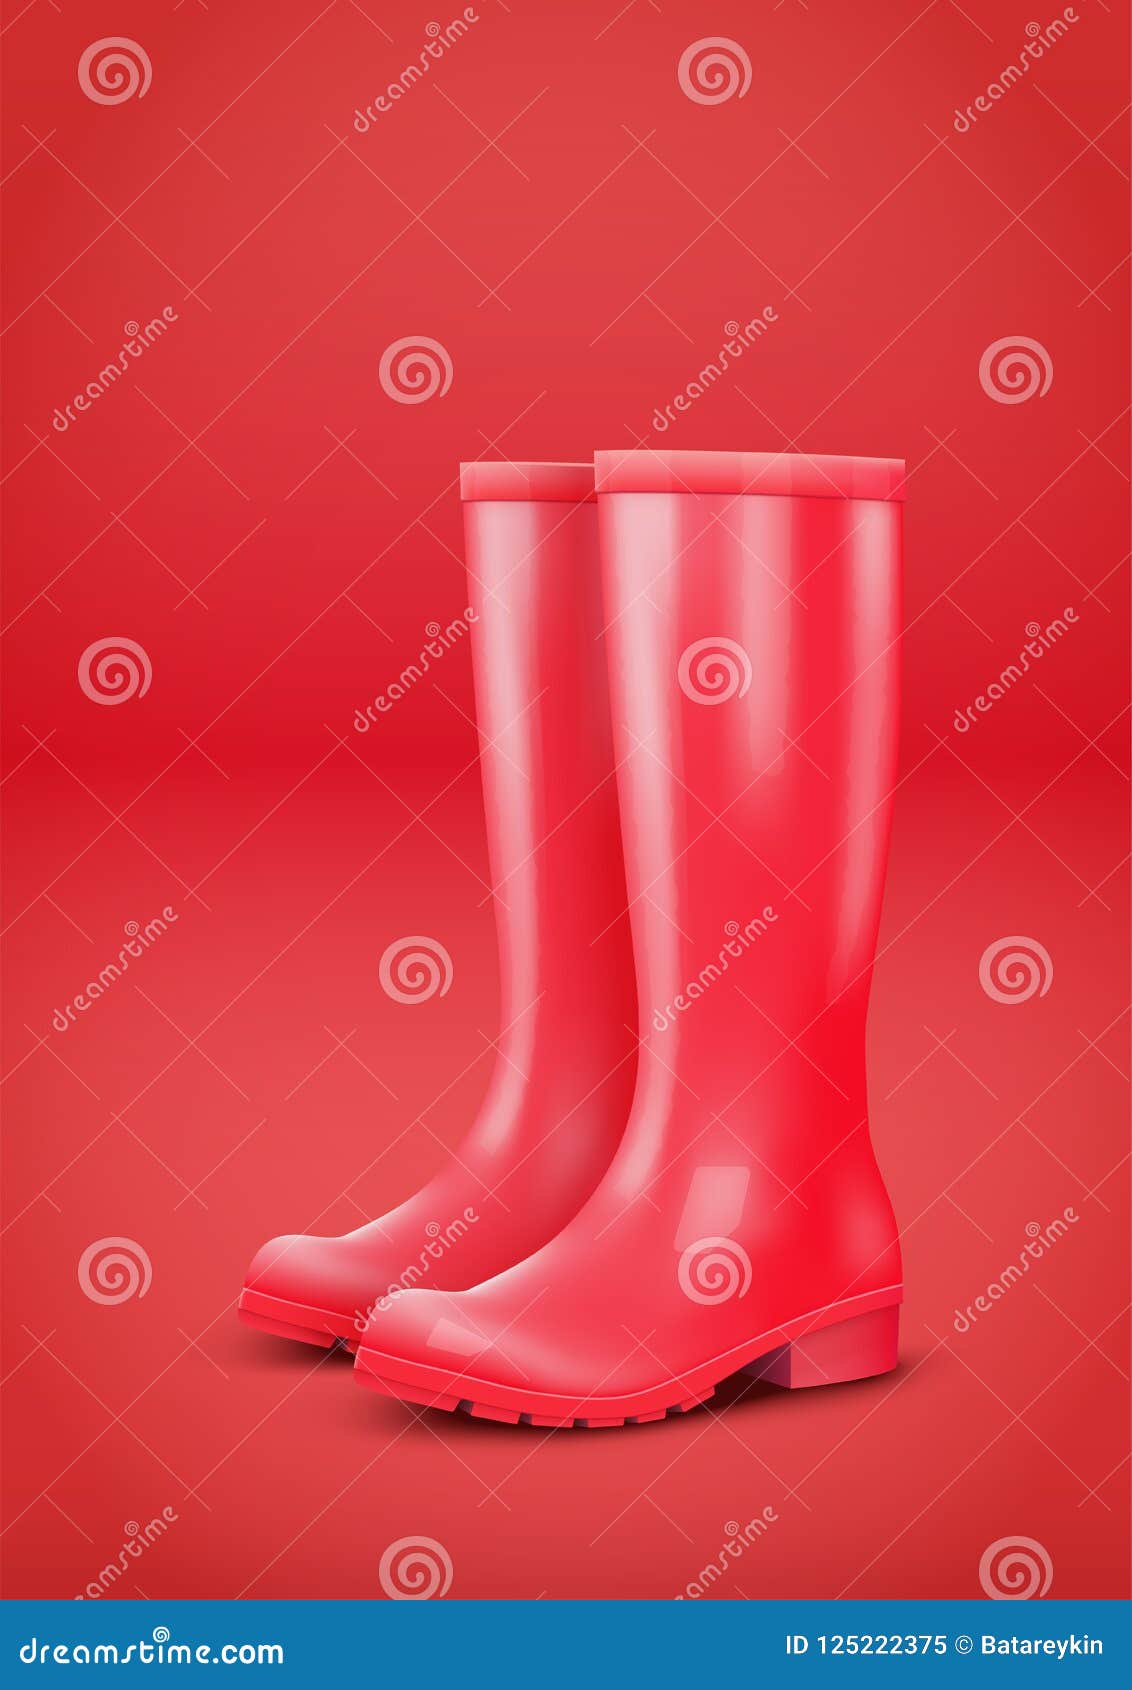 Red rain boots stock vector. Illustration of rainboots - 125222375